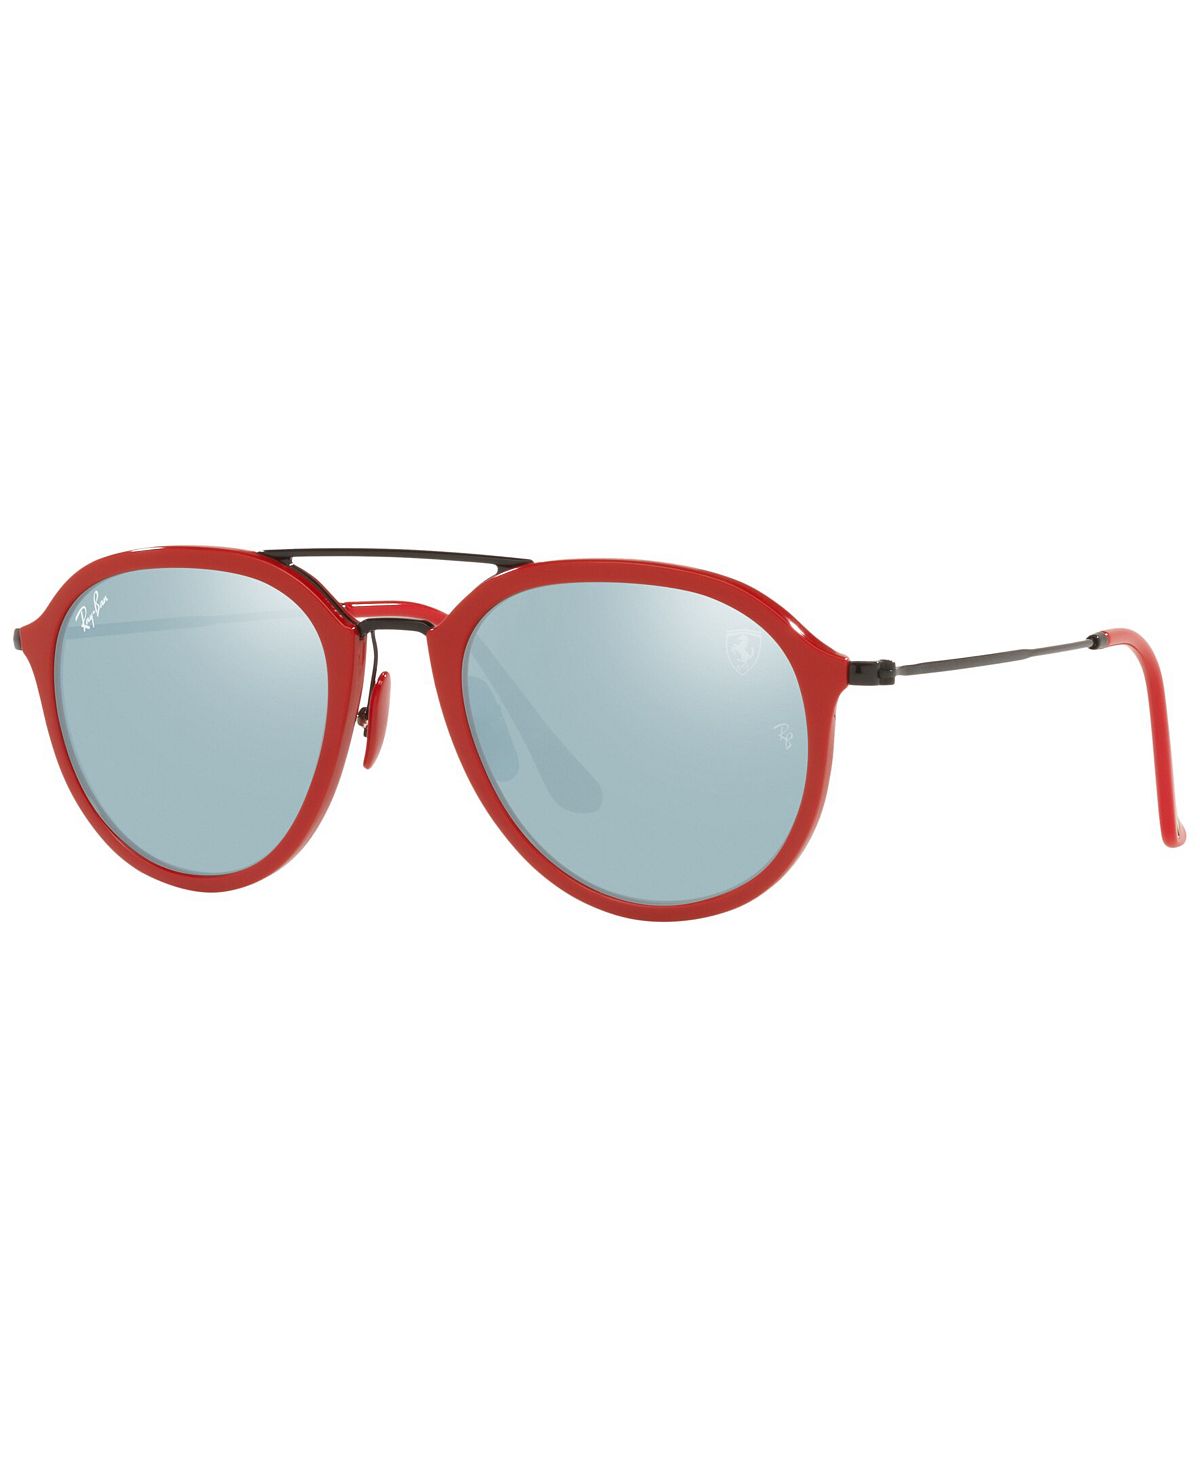 Солнцезащитные очки унисекс rb4369m scuderia ferrari collection 53 Ray-Ban, красный